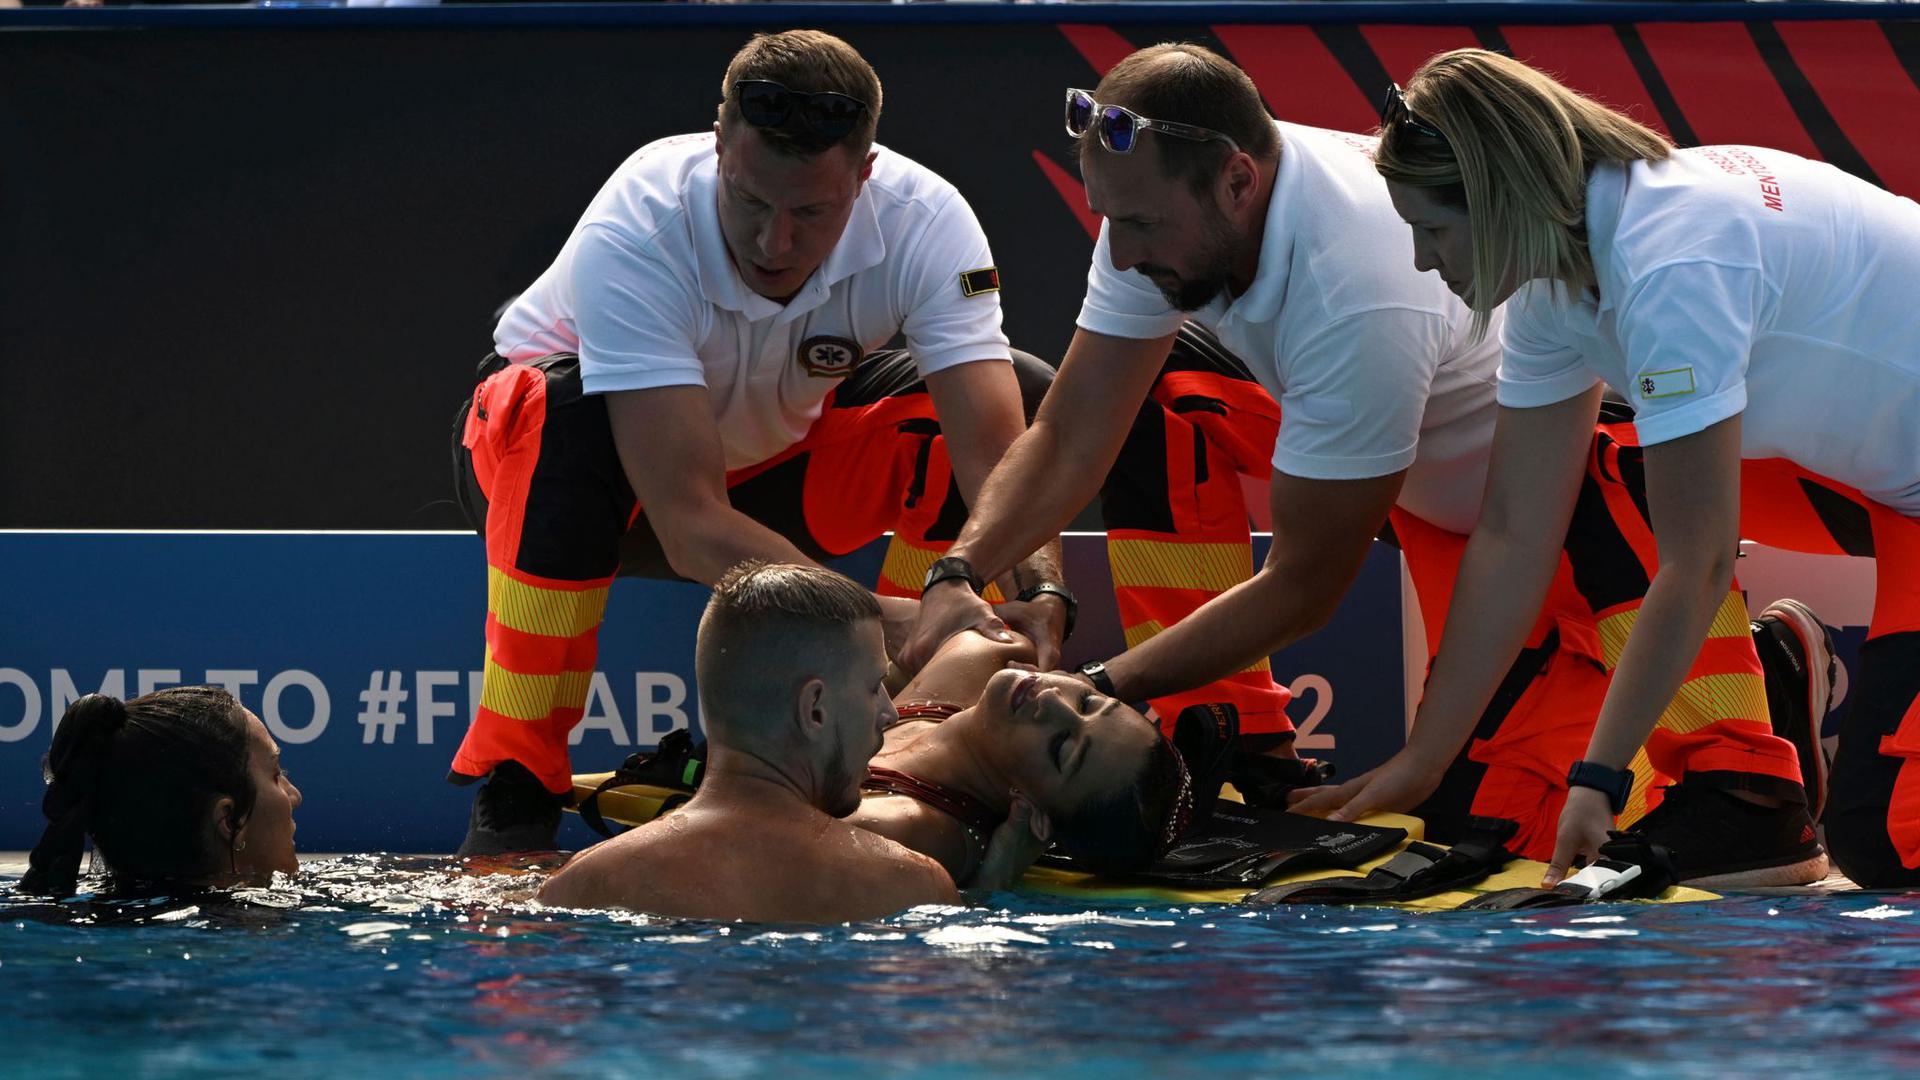 Die bewusstlose Anita Alvarez musste von ihrer Trainerin und Rettungspersonal aus dem Wasser gezogen werden.